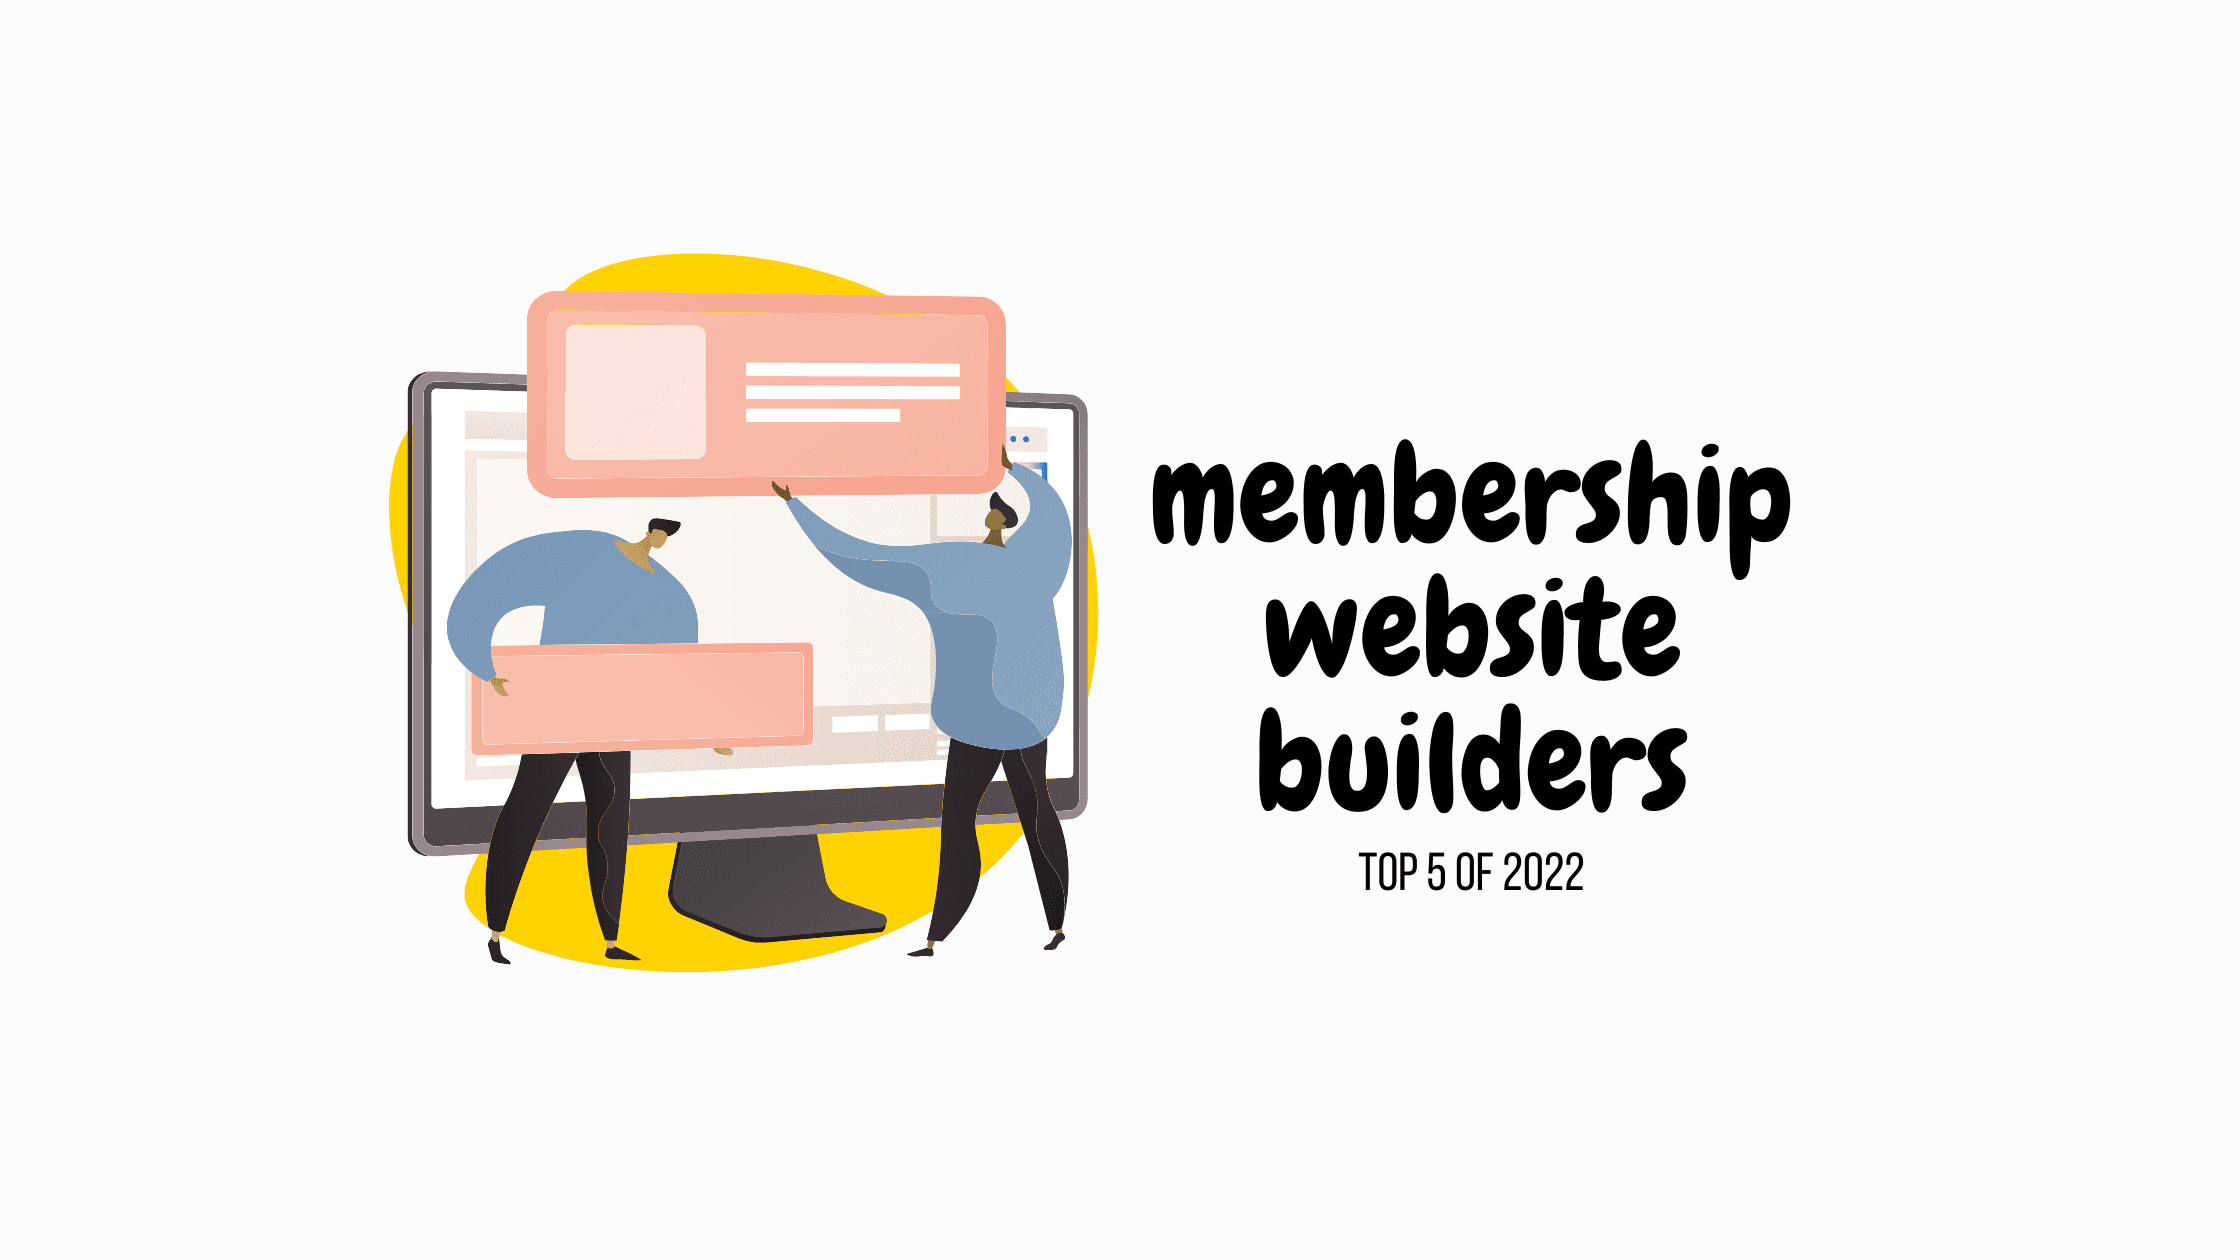 membership website builders for 2022